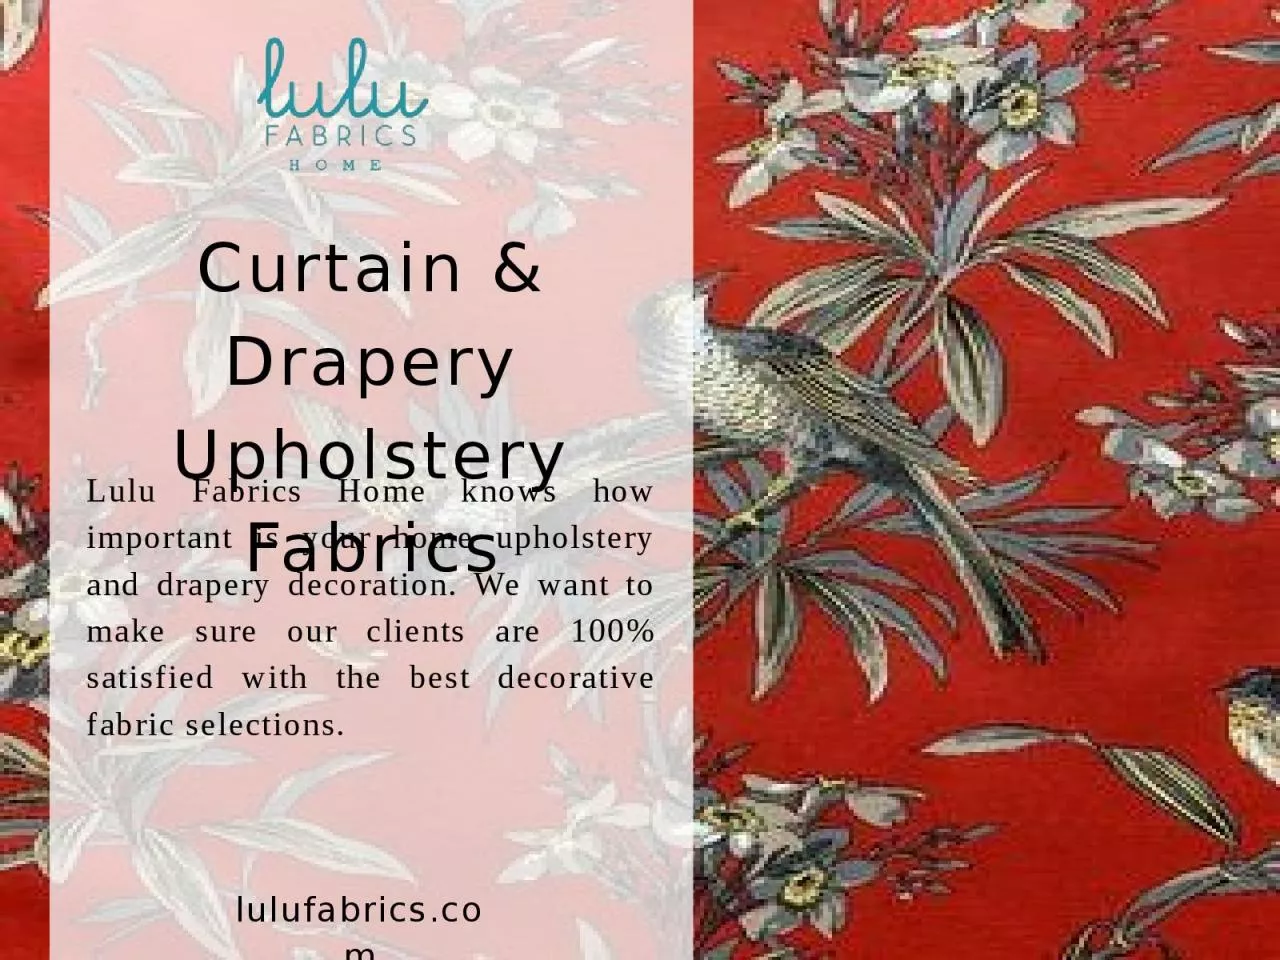 Curtain & Drapery Upholstery Fabrics